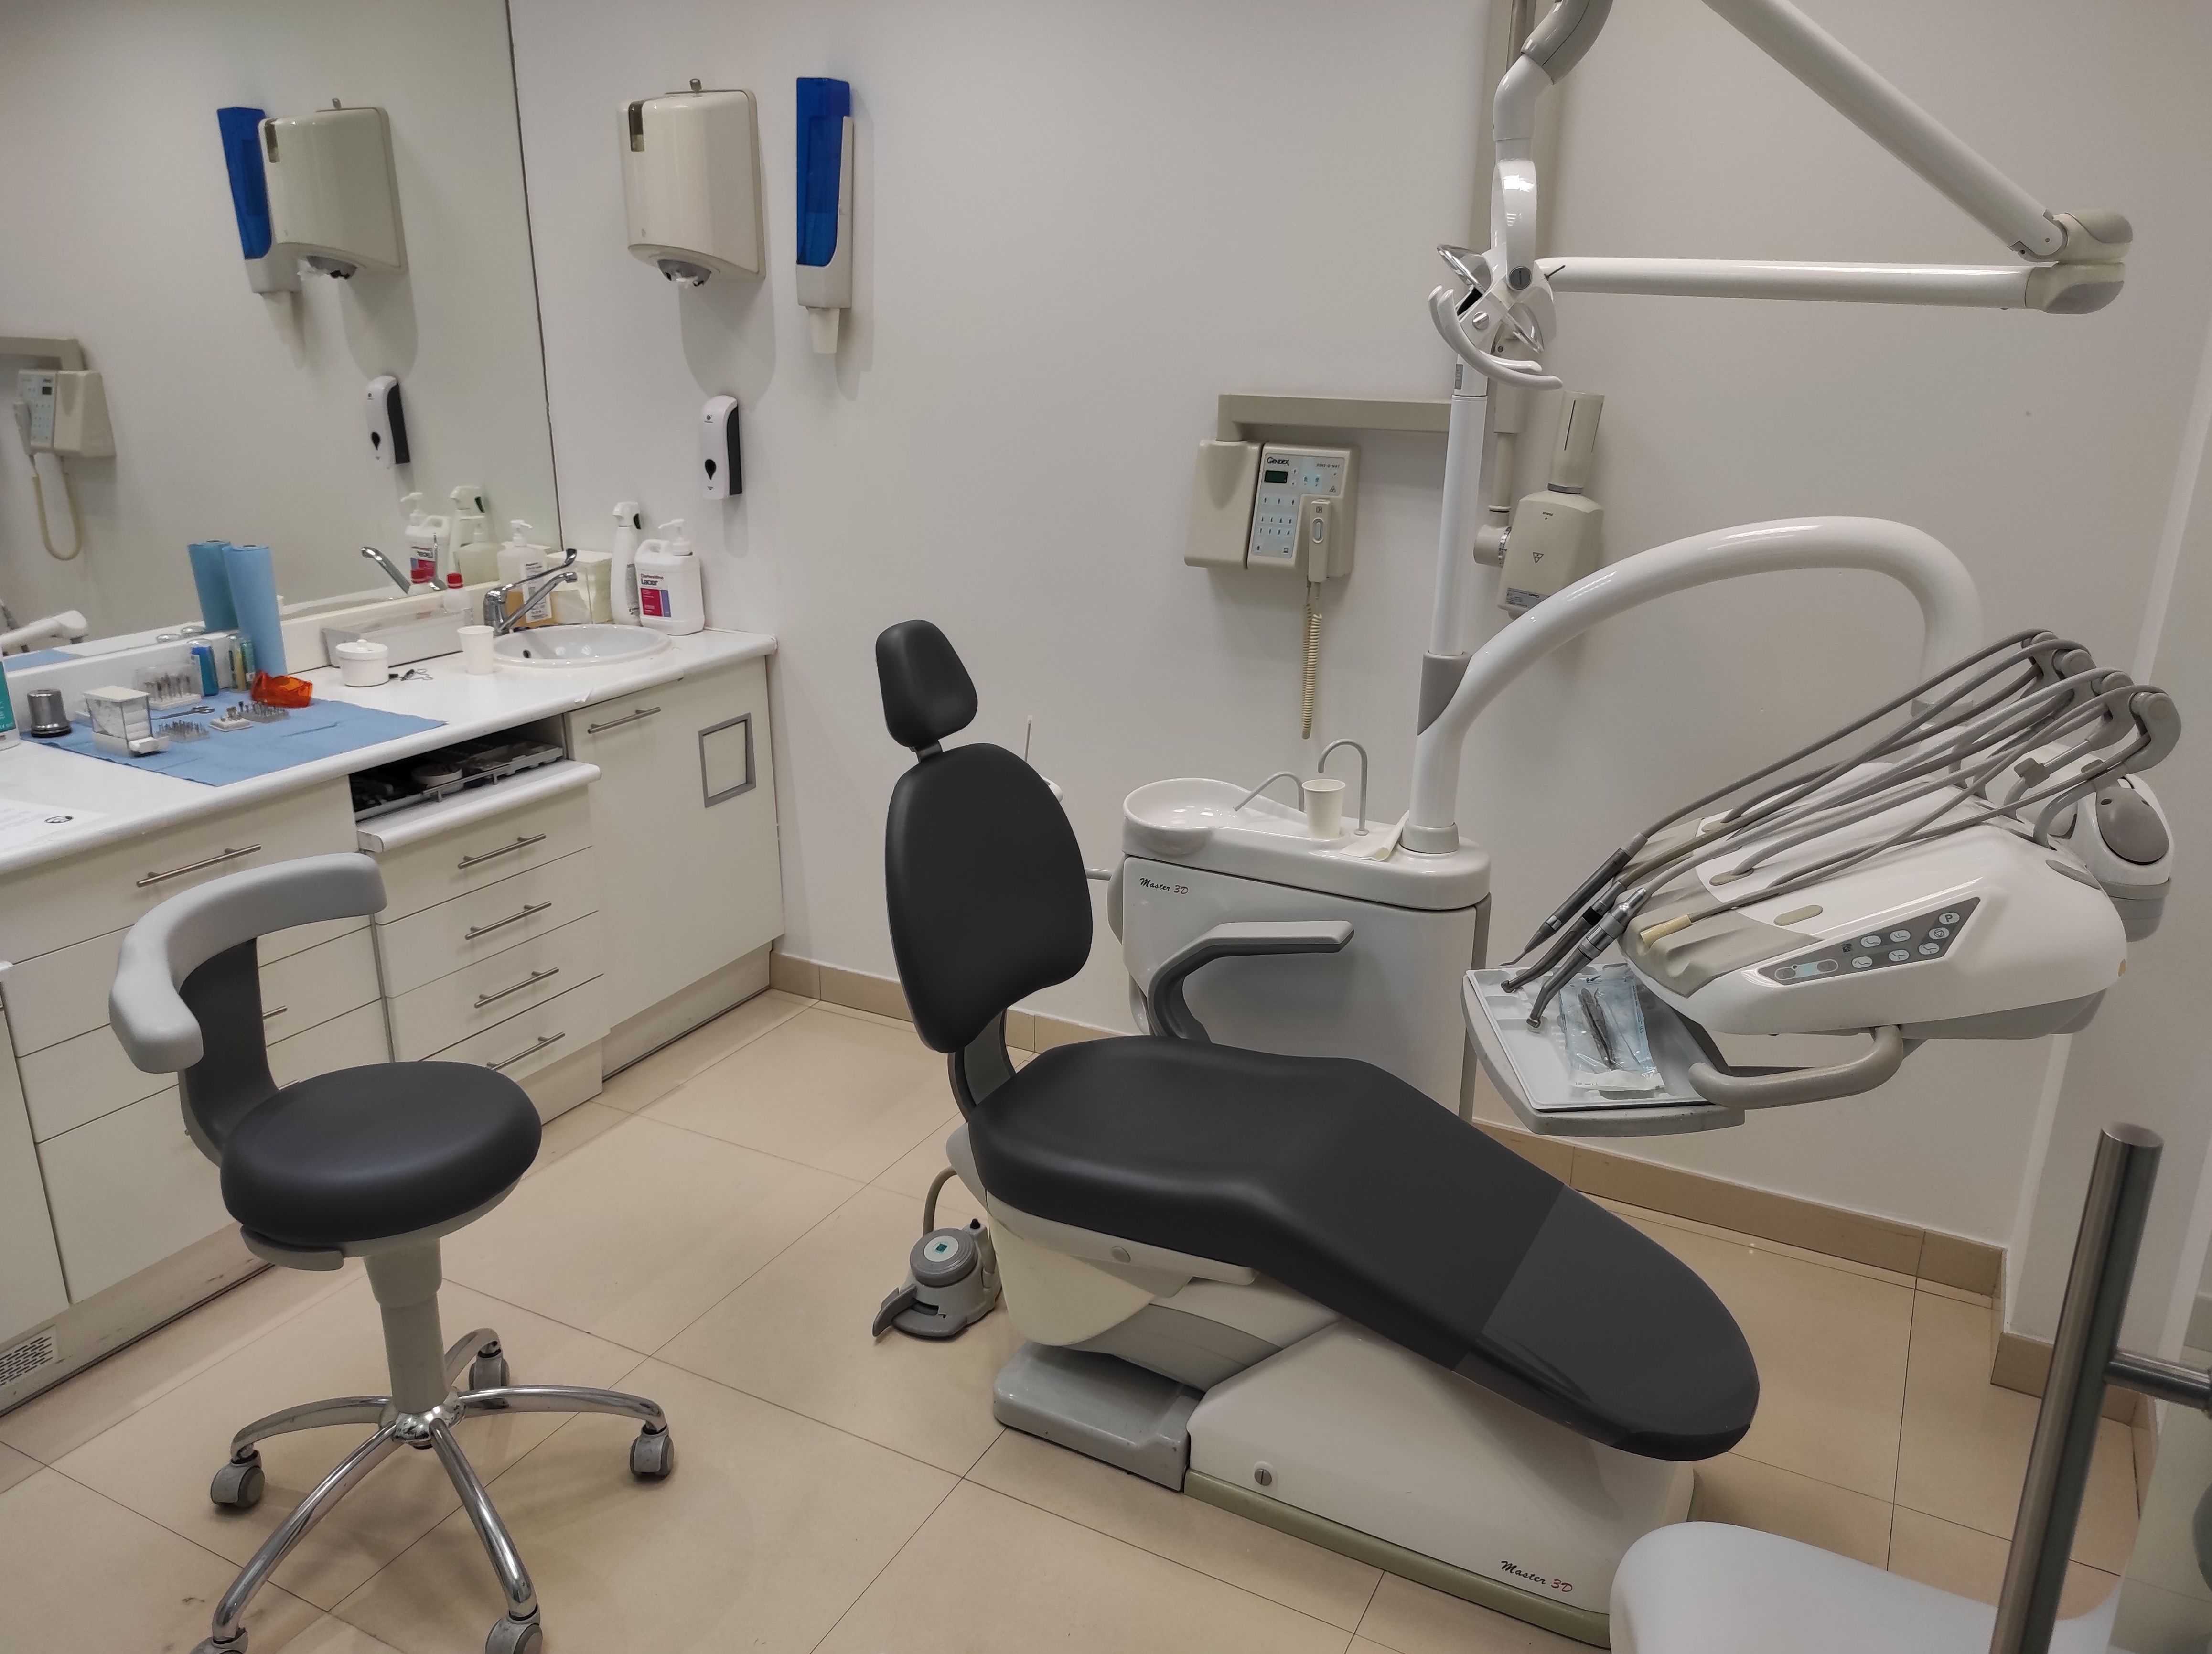 Foto 1 de Dentistas en Madrid | Clínica Dental Atocha